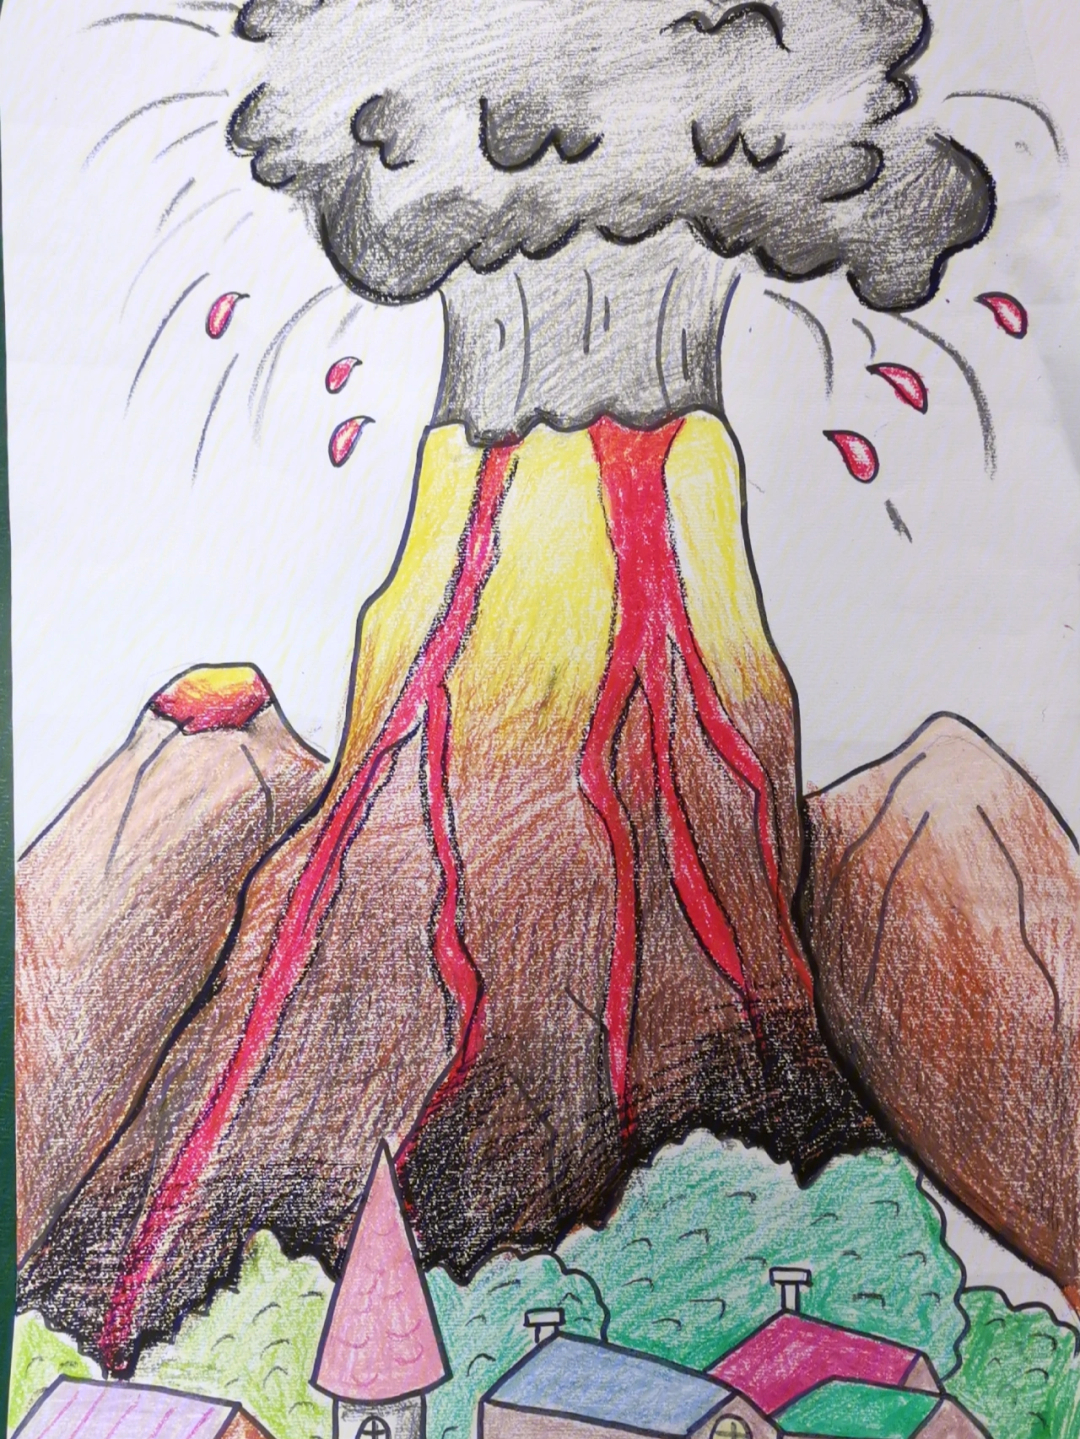 火山爆发为主题儿童画图片